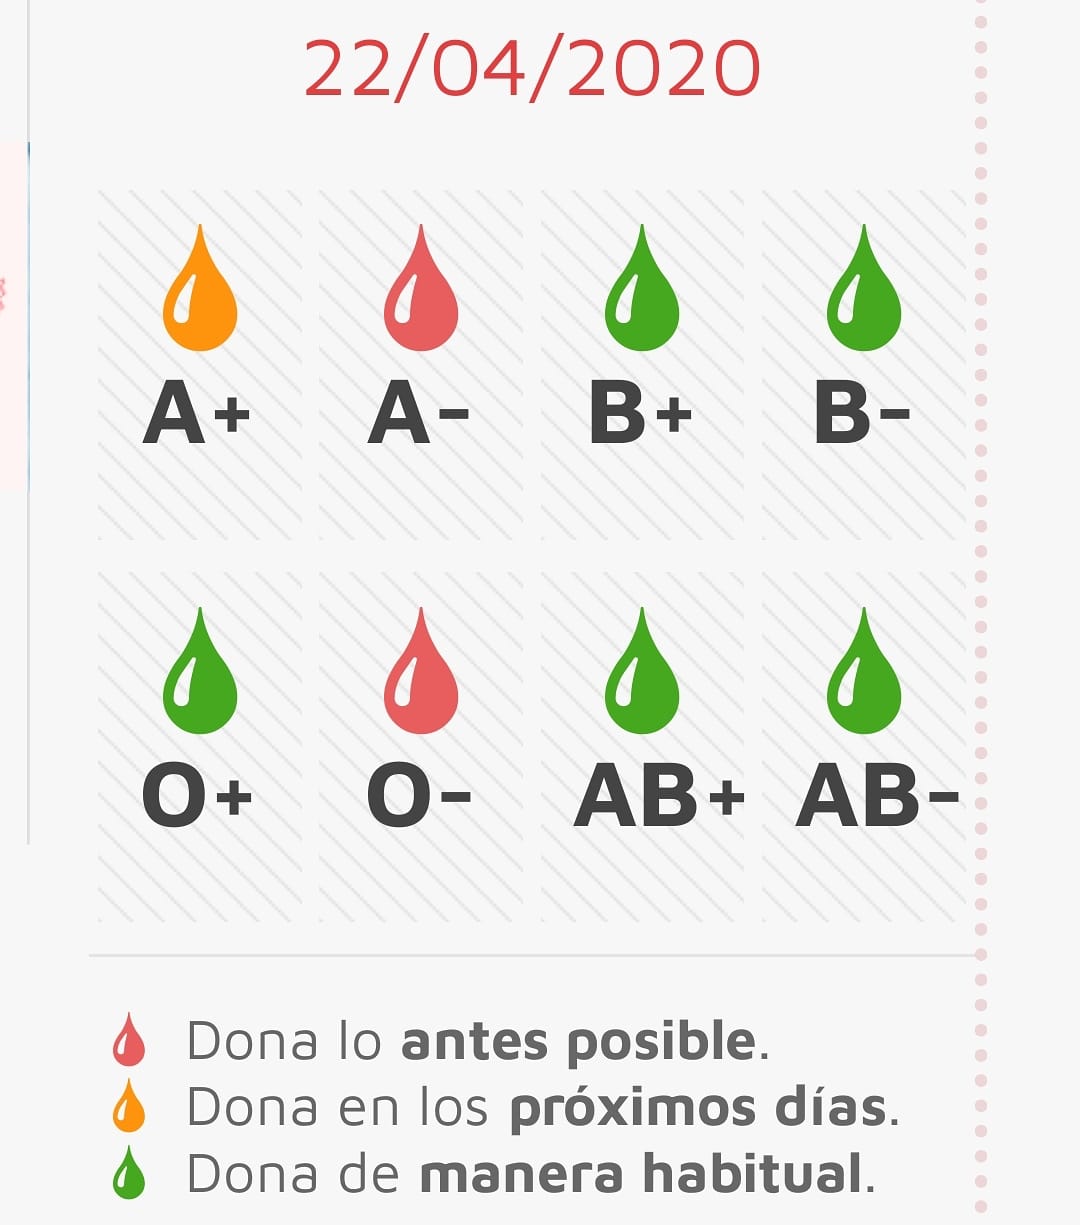 España necesita sangre urgentemente, España necesita ayuda